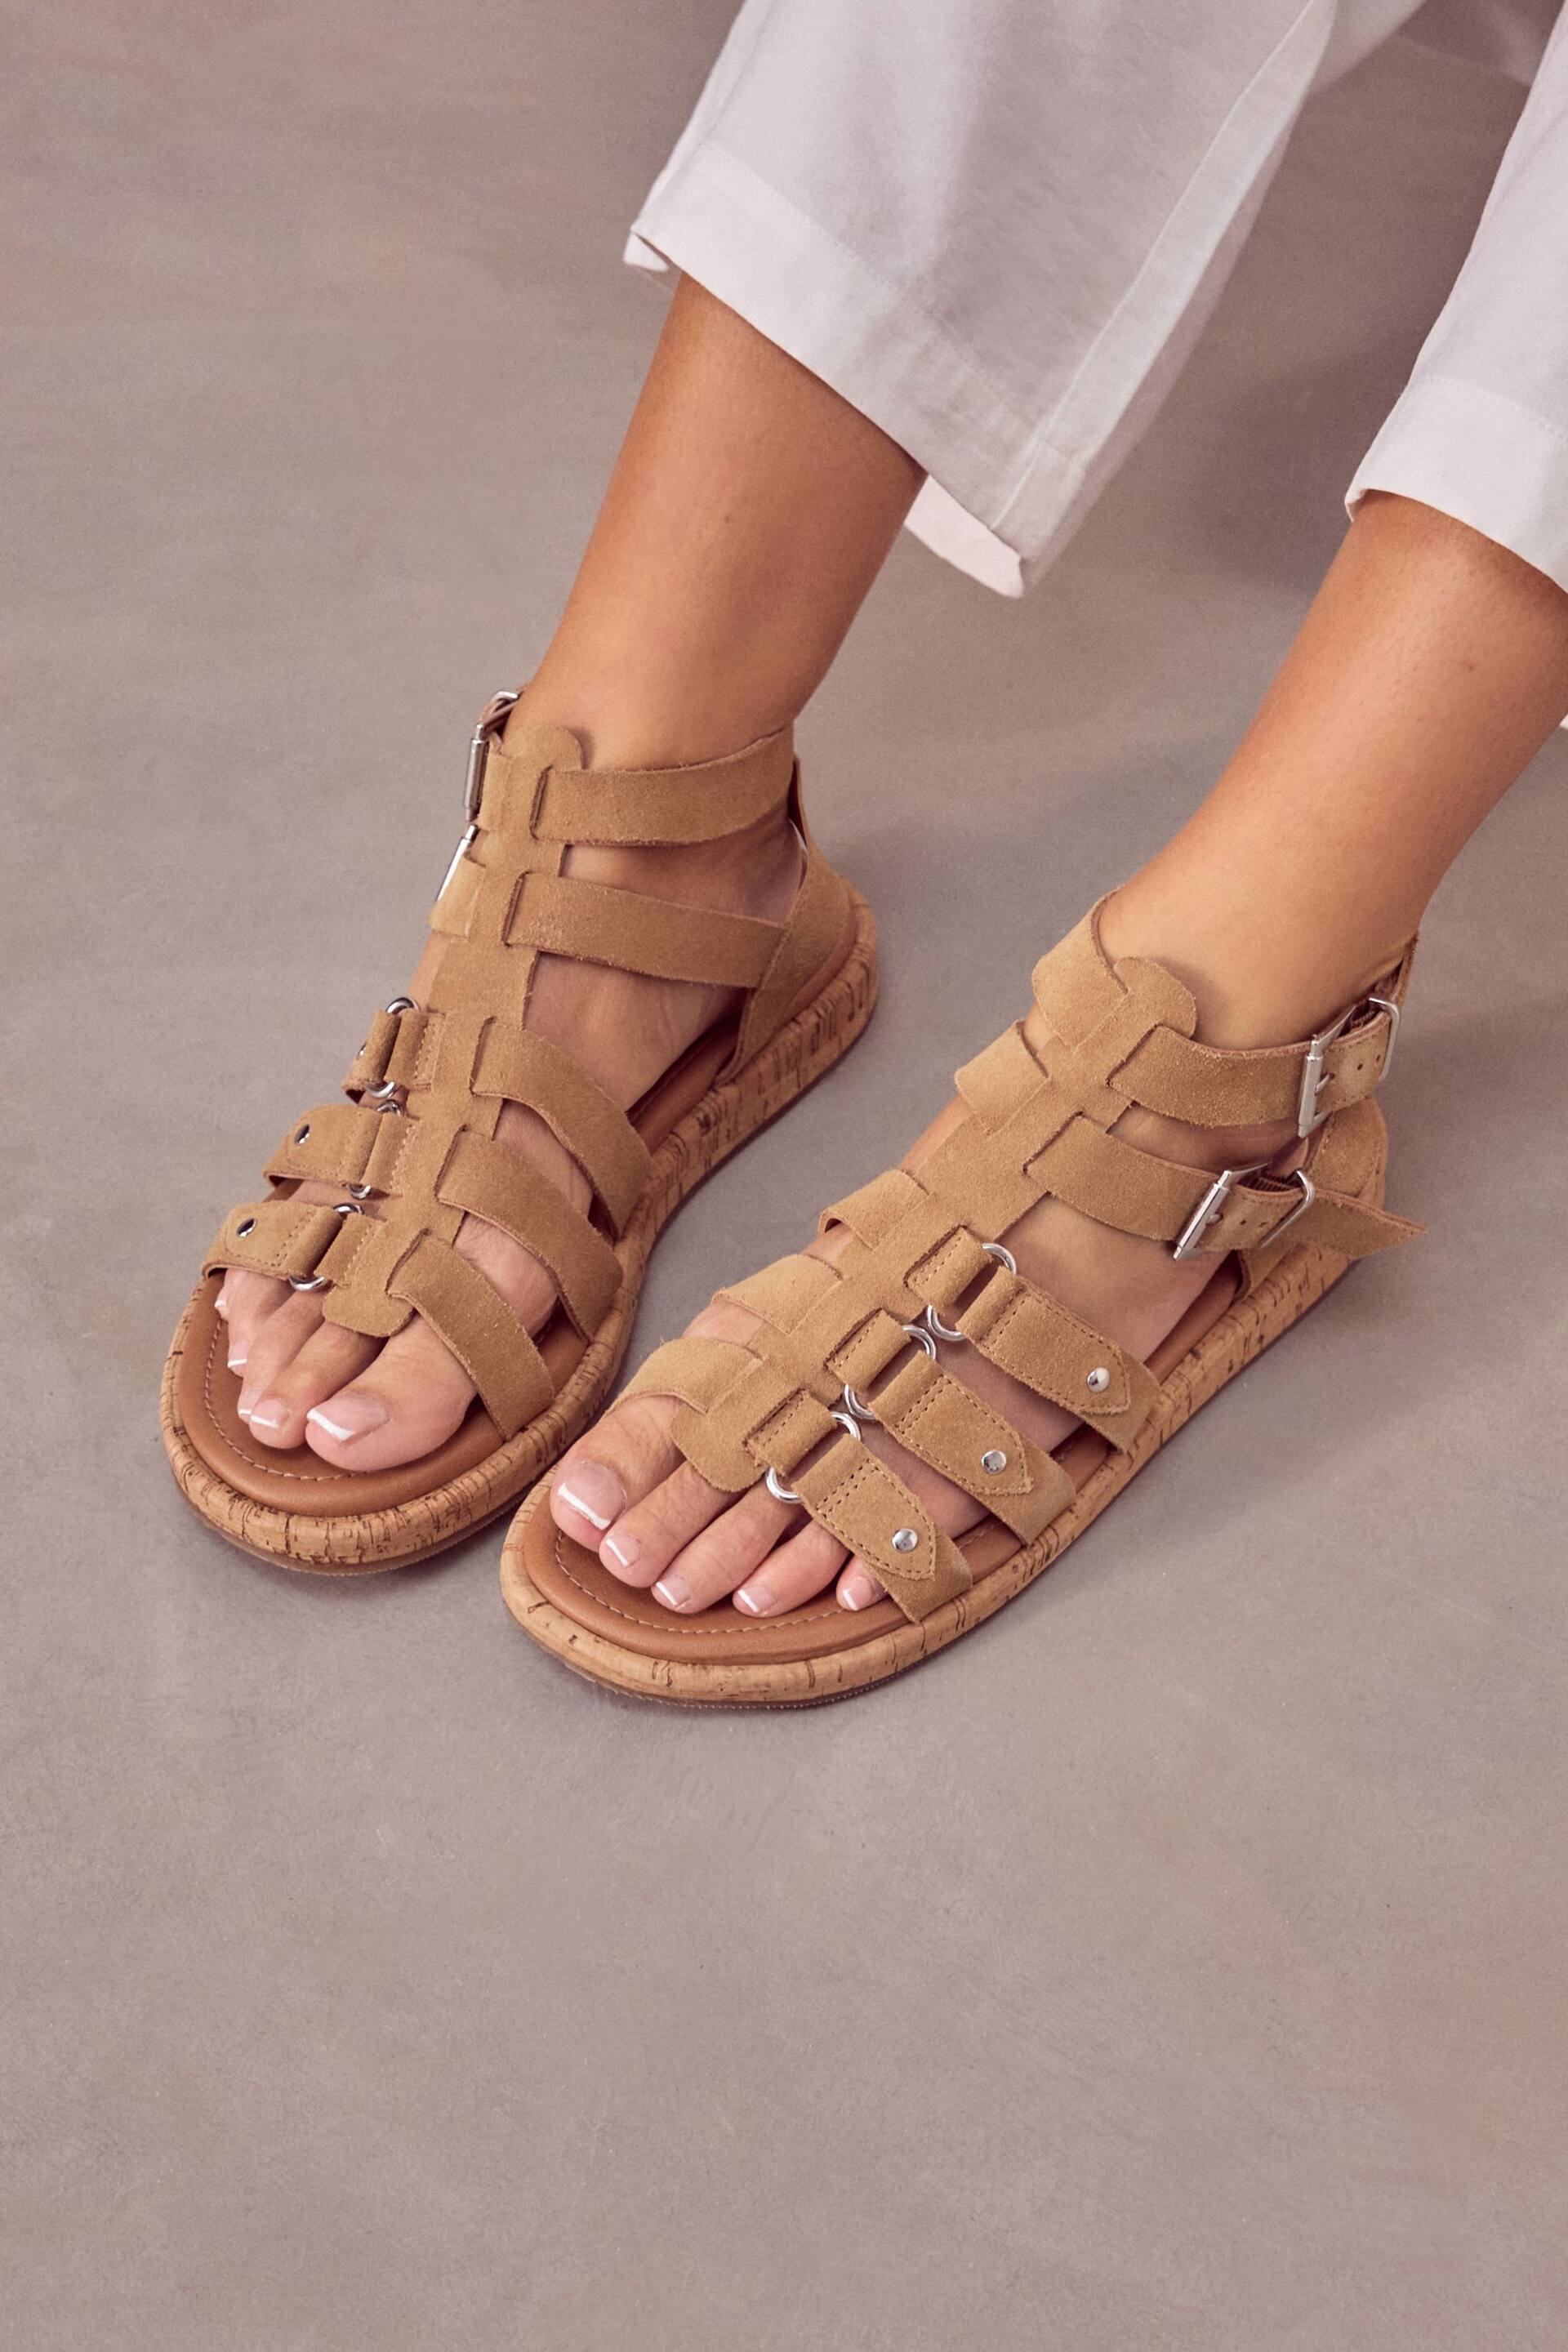 Sand Brown Regular/Wide Fit Forever Comfort® Leather Gladiator Sandals - Image 2 of 6